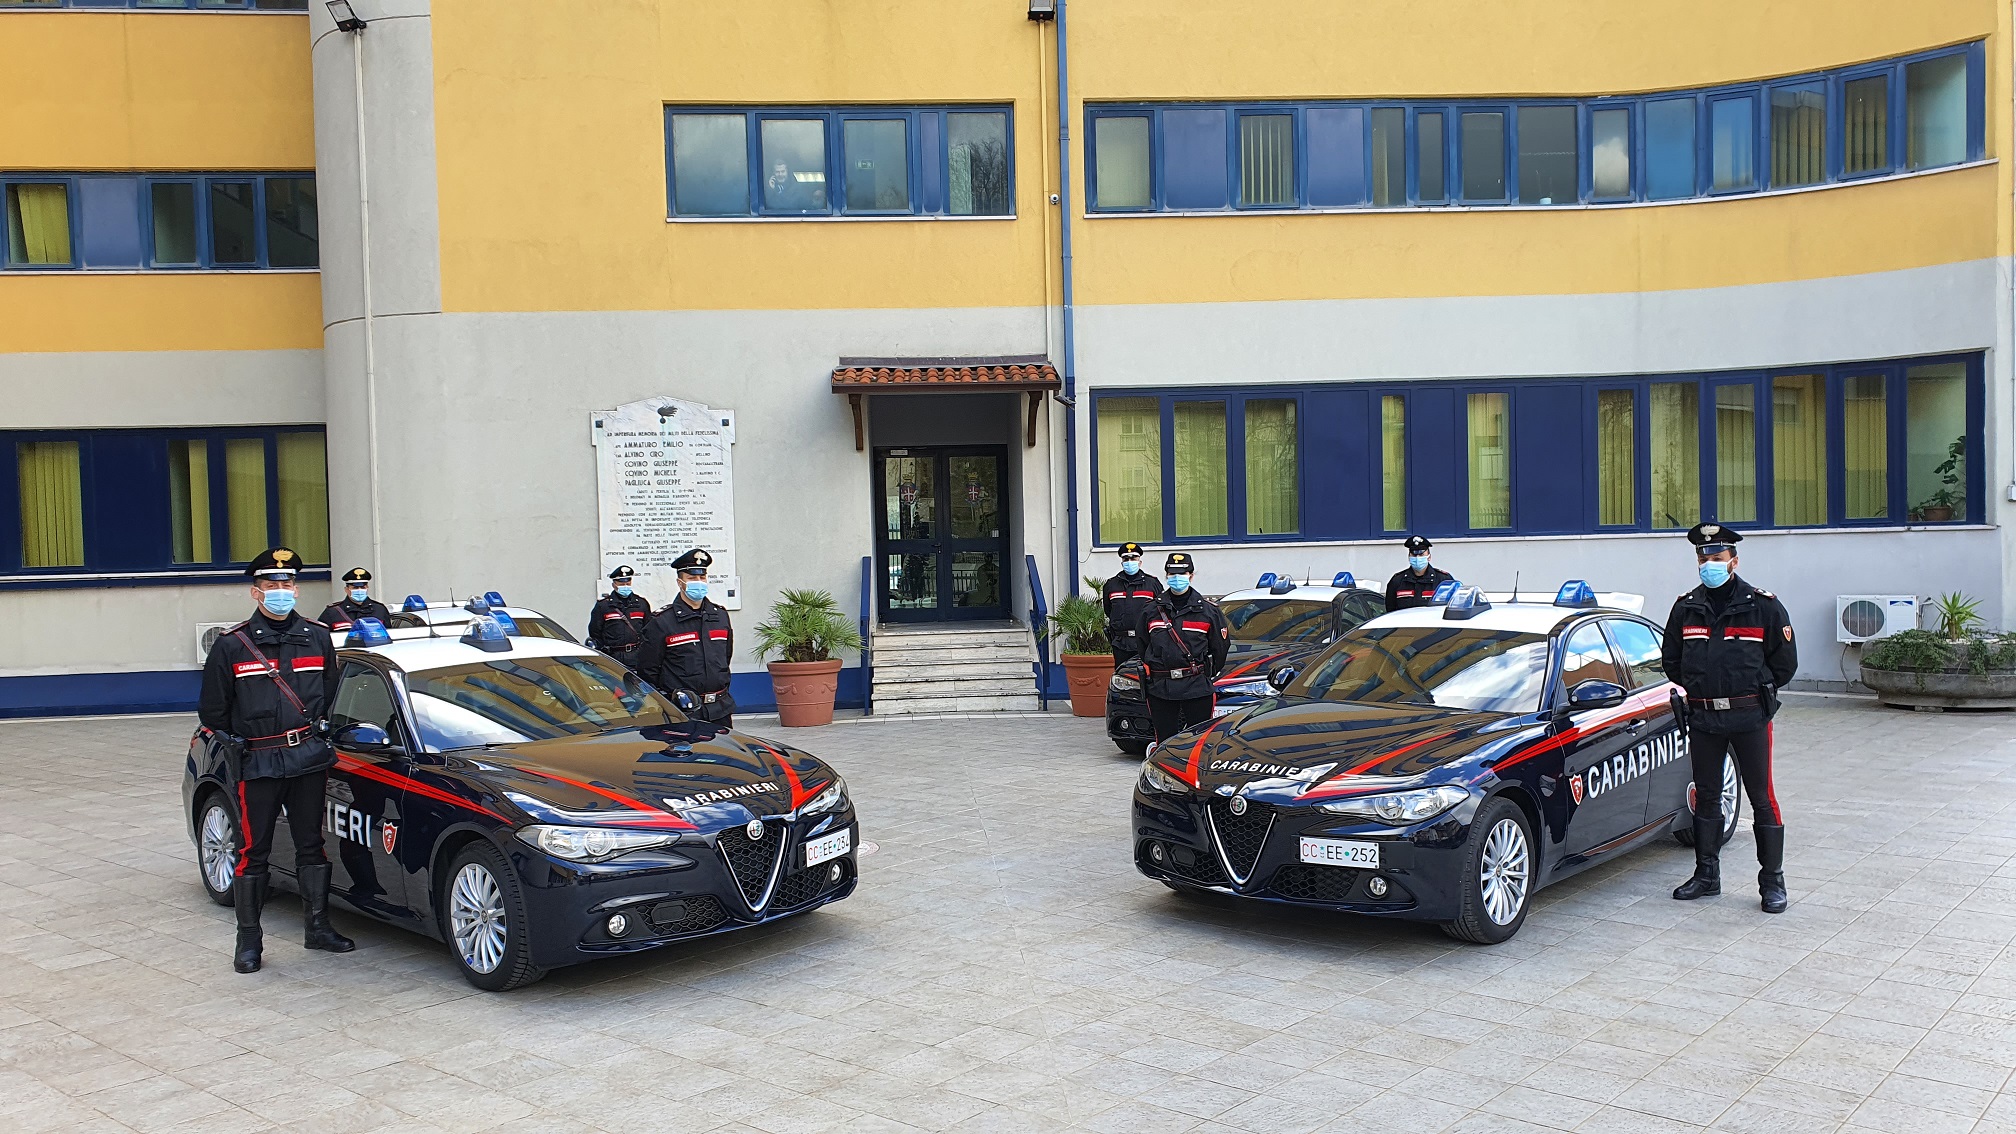 L’Alfa Romeo Giulia Radiomobile 2.0 in dotazione al Comando Provinciale dei Carabinieri